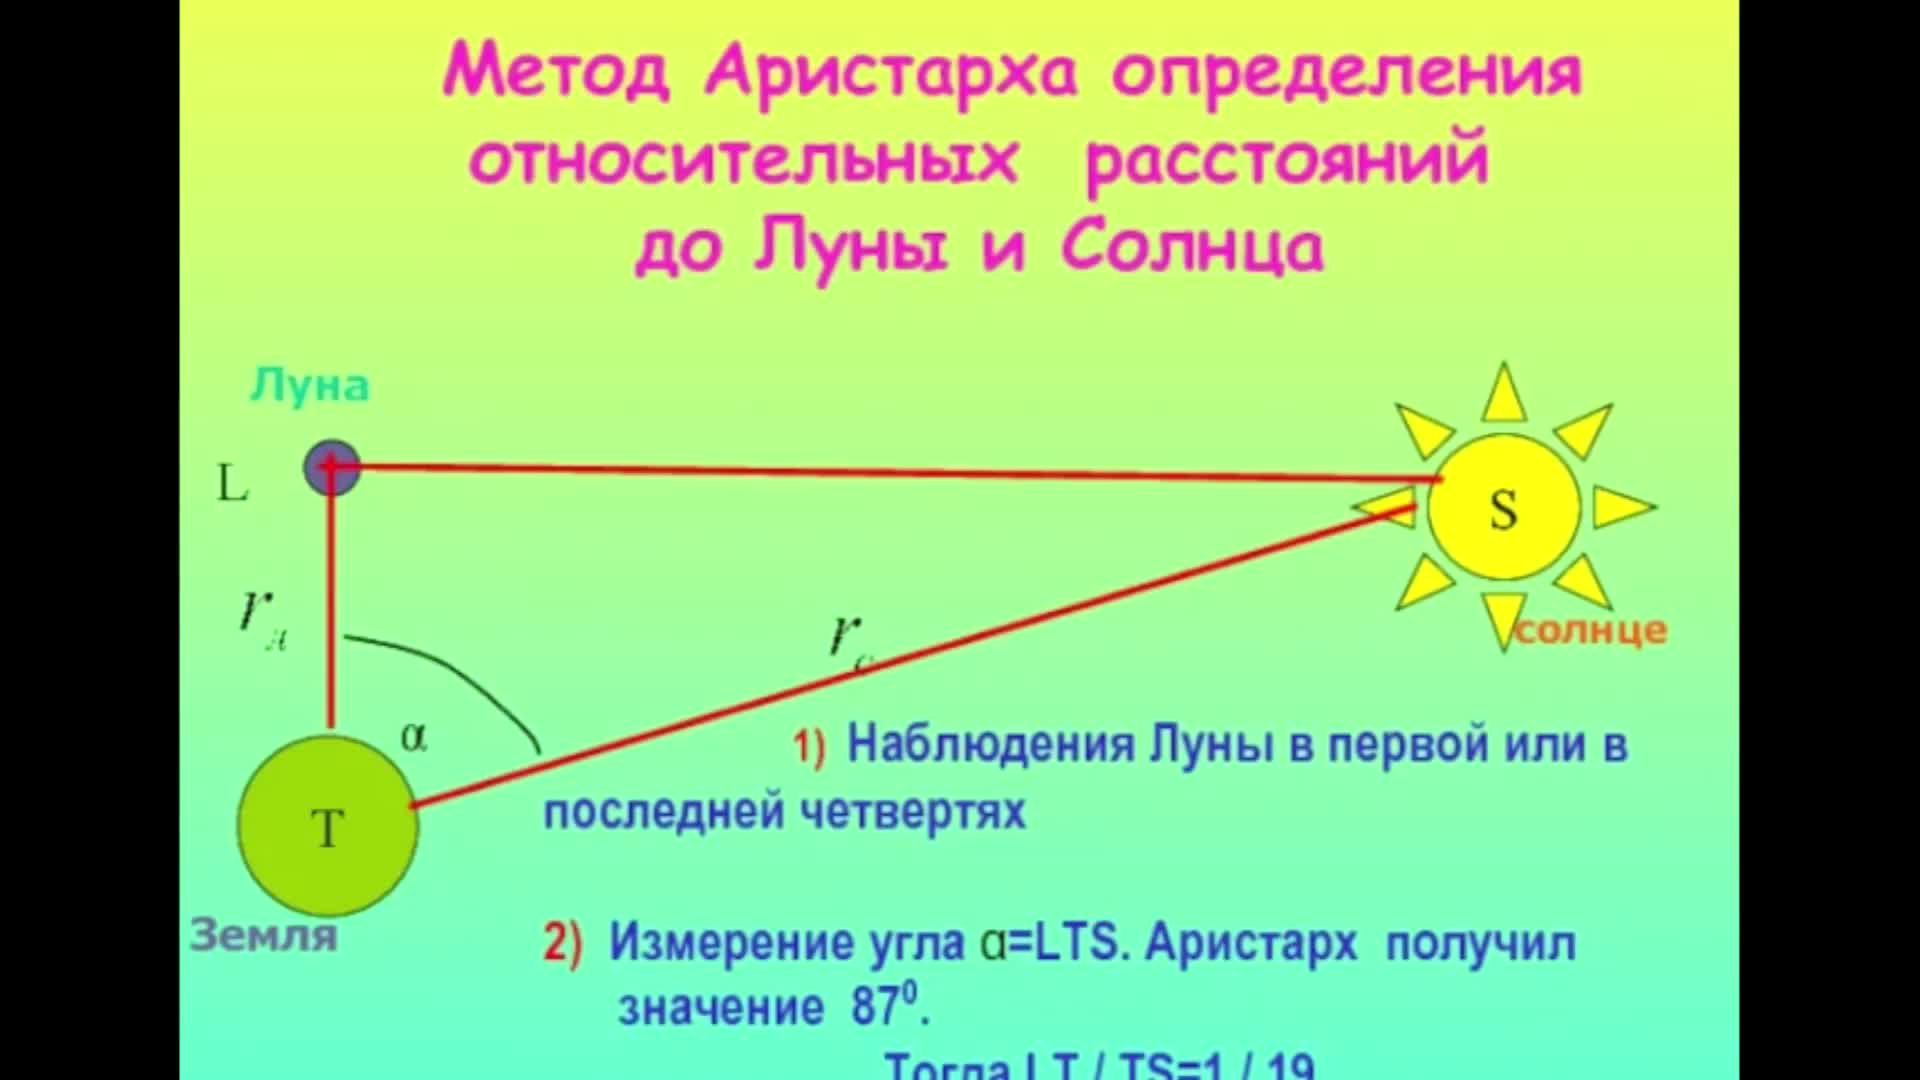 Расстояние до луны до 10. Способы определения расстояния до Луны. Как измерили расстояние от земли до солнца. Расстояние от земли до Луны и солнца. Как измерить расстояние до Луны.